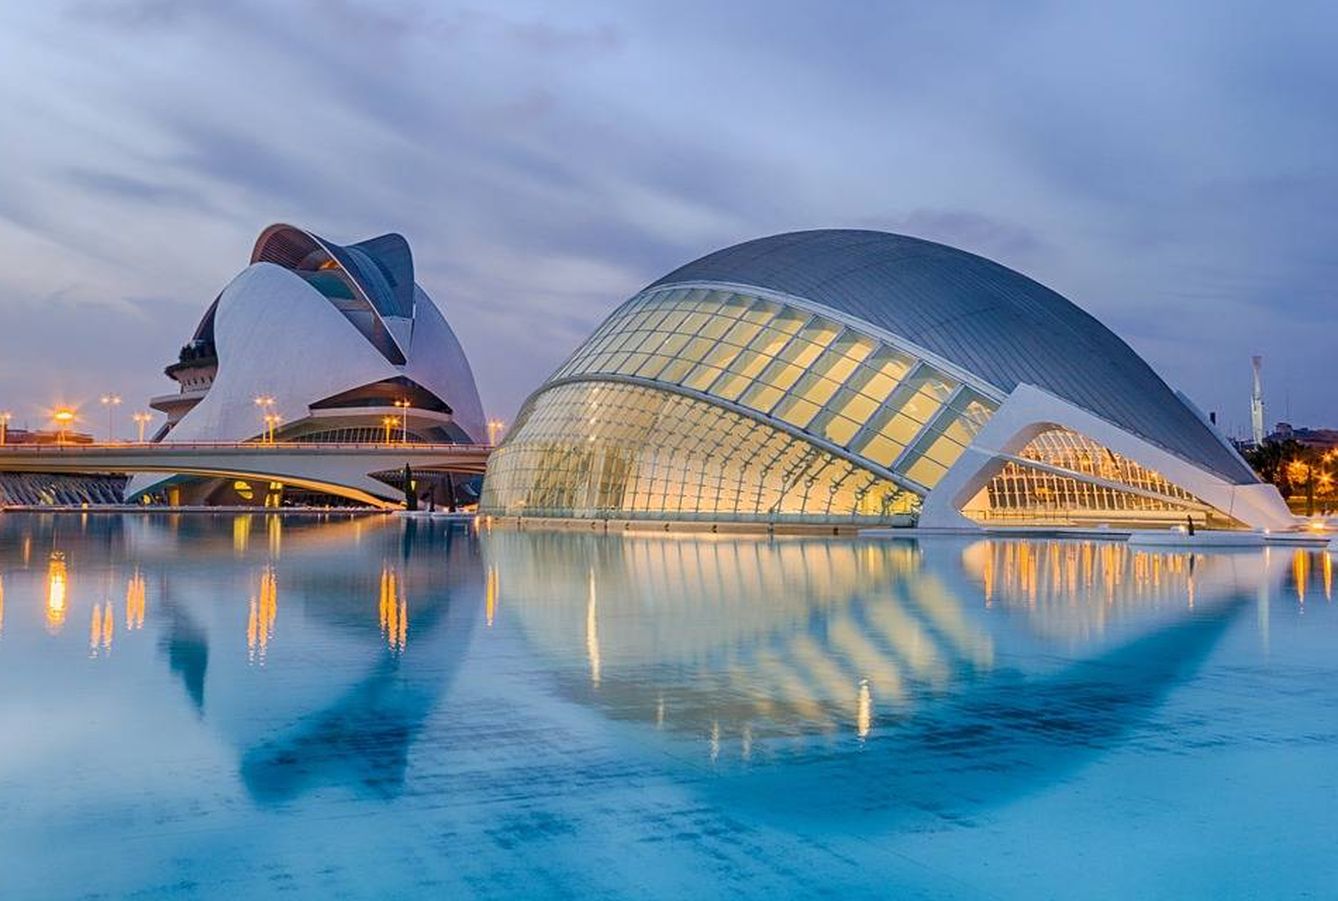 Ciudad de las Artes y las Ciencias de Valencia. (Pixabay)